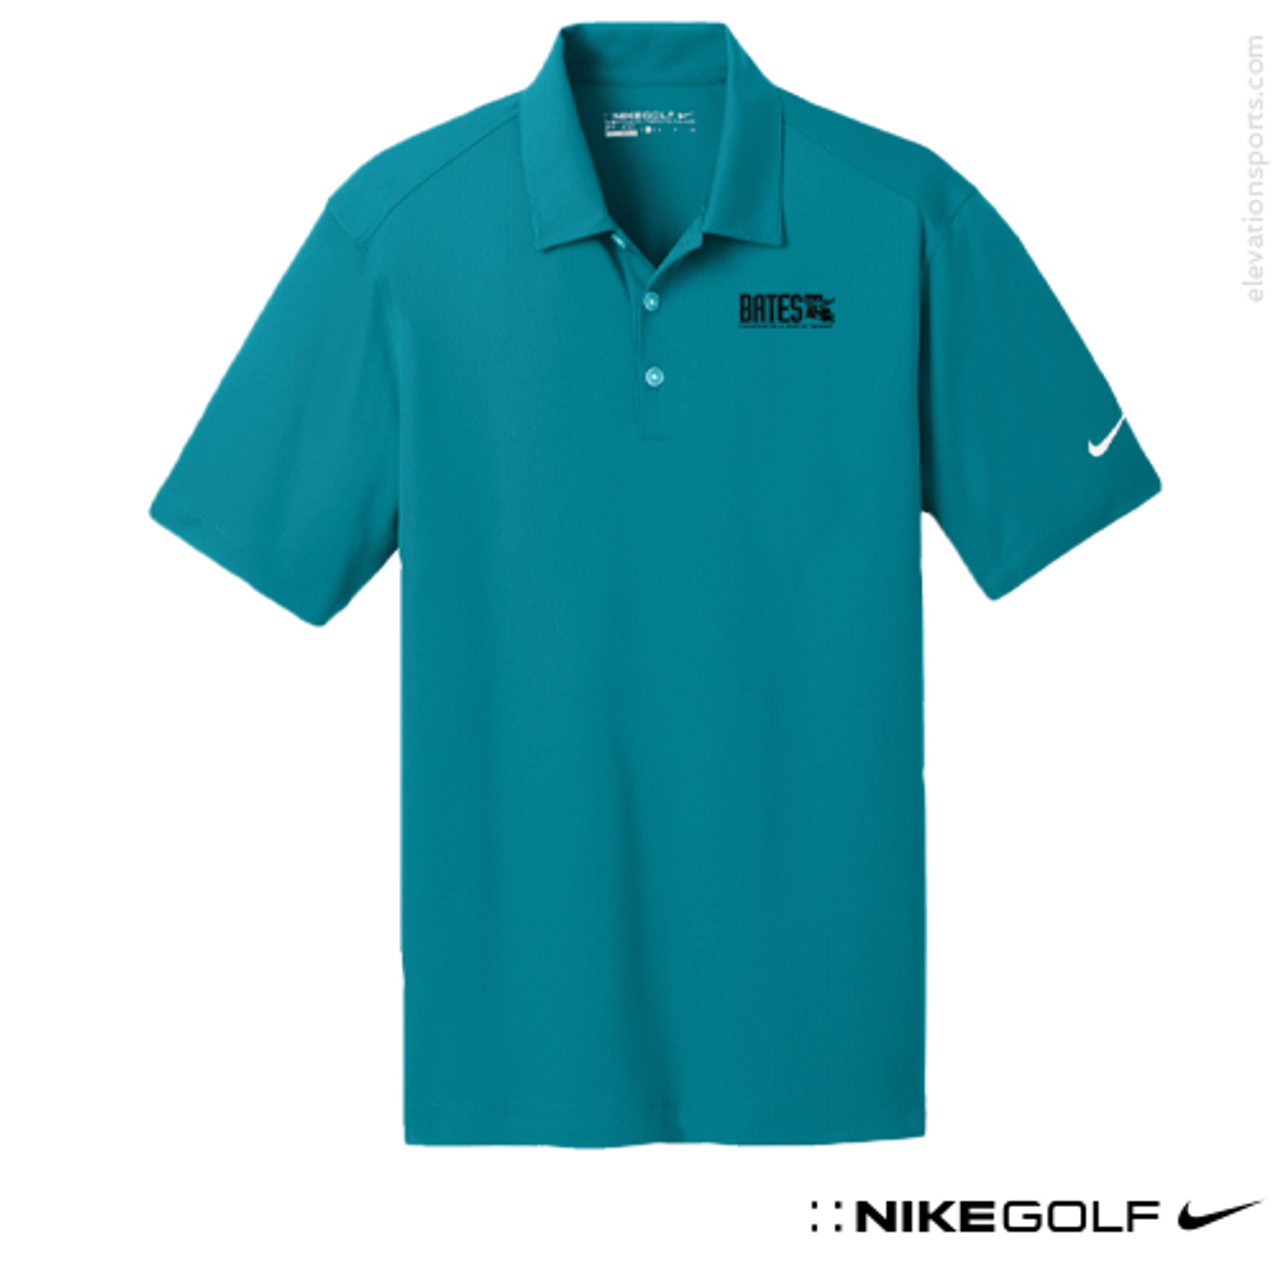 nike custom golf shirts